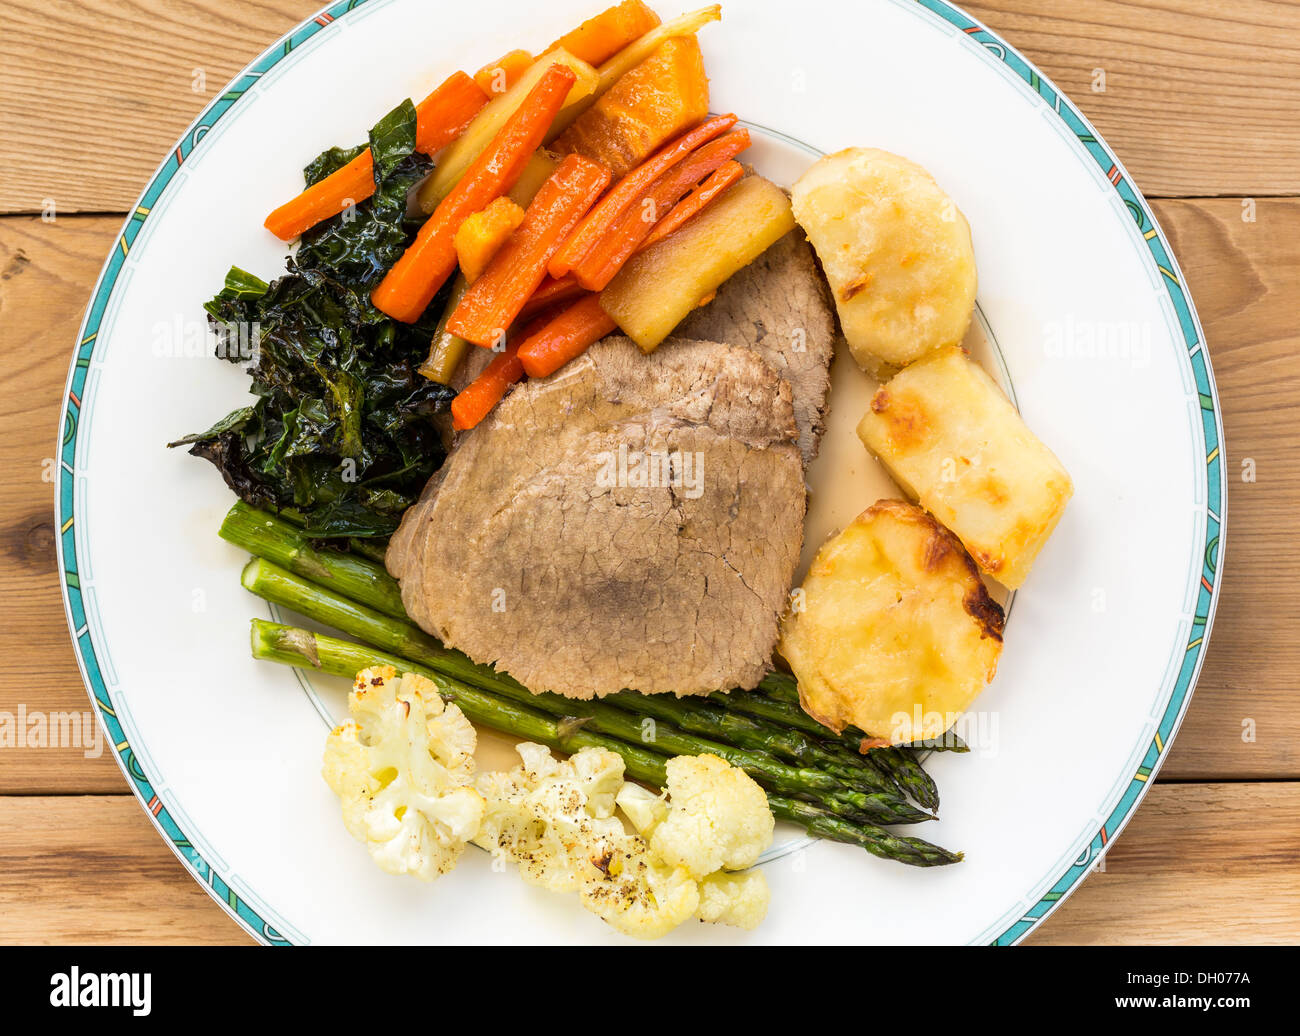 - Déjeuner du dimanche britannique traditionnel rôti de boeuf, pommes de terre, carottes, panais, chou frisé, chou-fleur et les asperges sur une plaque Banque D'Images